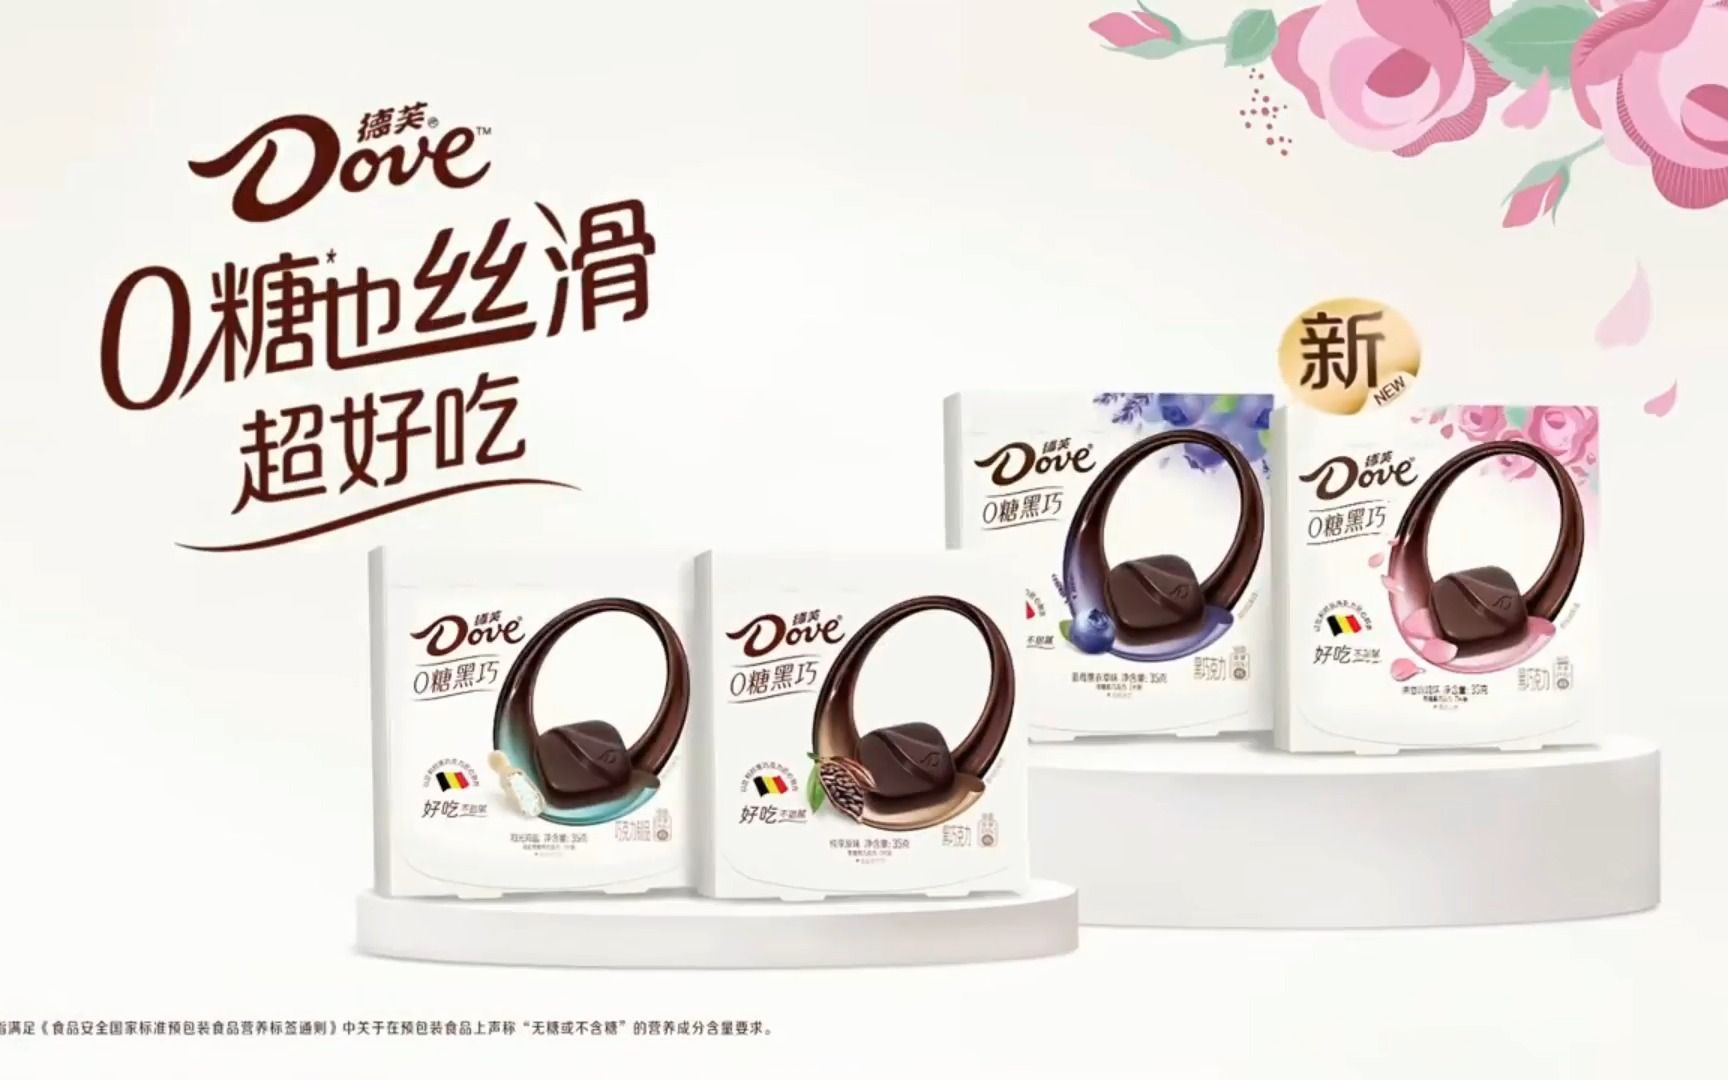 周冬雨 刘奕君 德芙巧克力包装系列广告合集